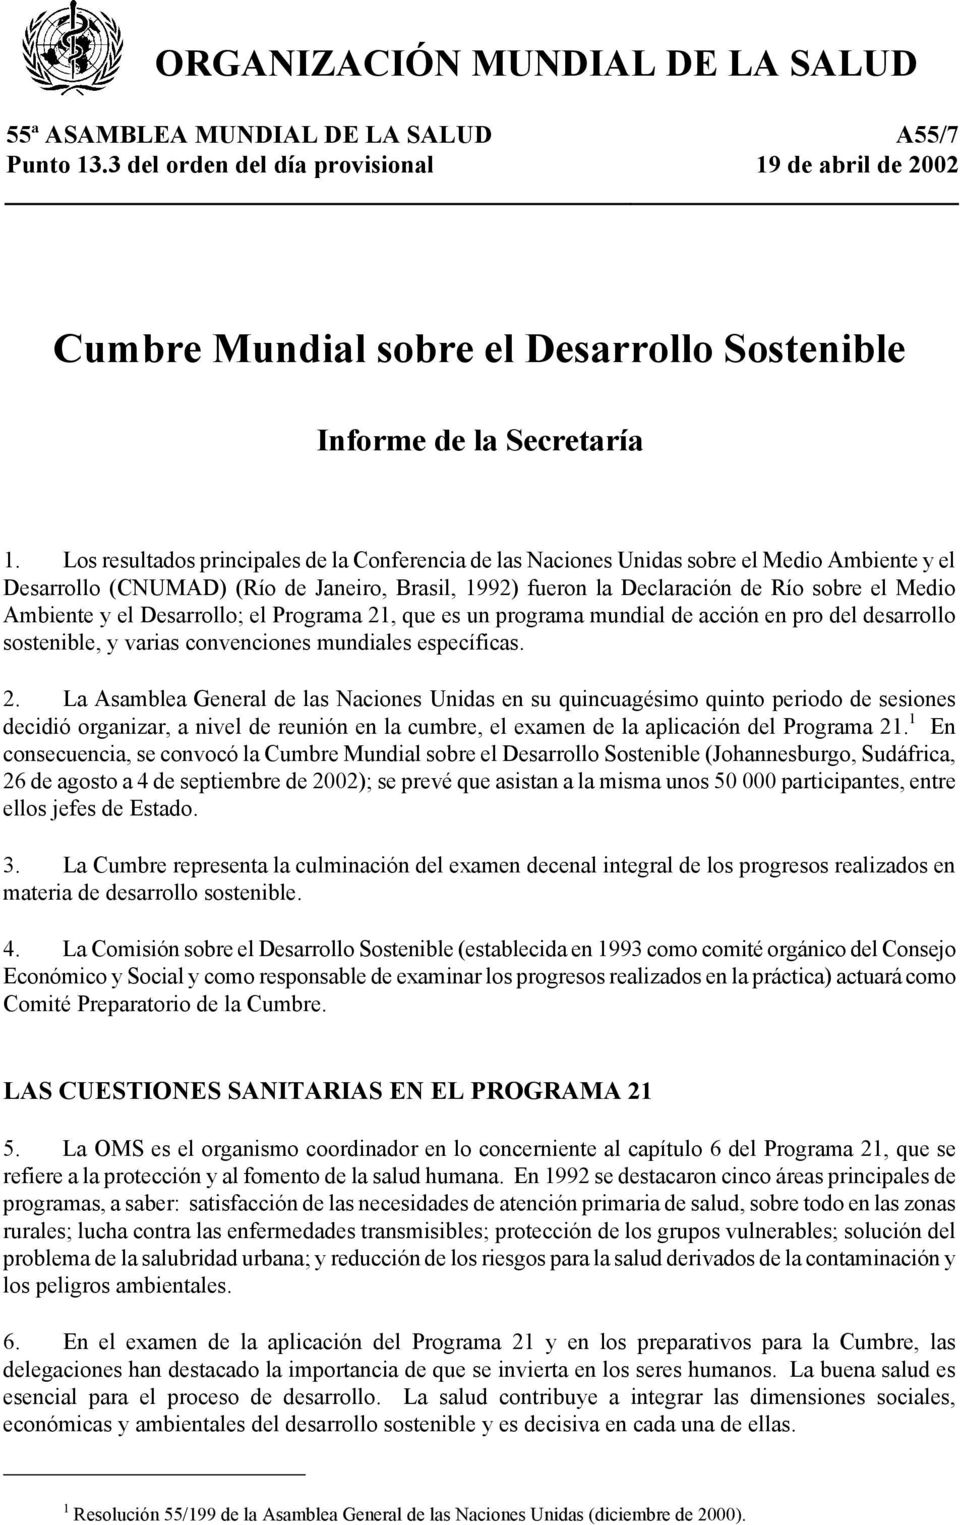 Los resultados principales de la Conferencia de las Naciones Unidas sobre el Medio Ambiente y el Desarrollo (CNUMAD) (Río de Janeiro, Brasil, 1992) fueron la Declaración de Río sobre el Medio